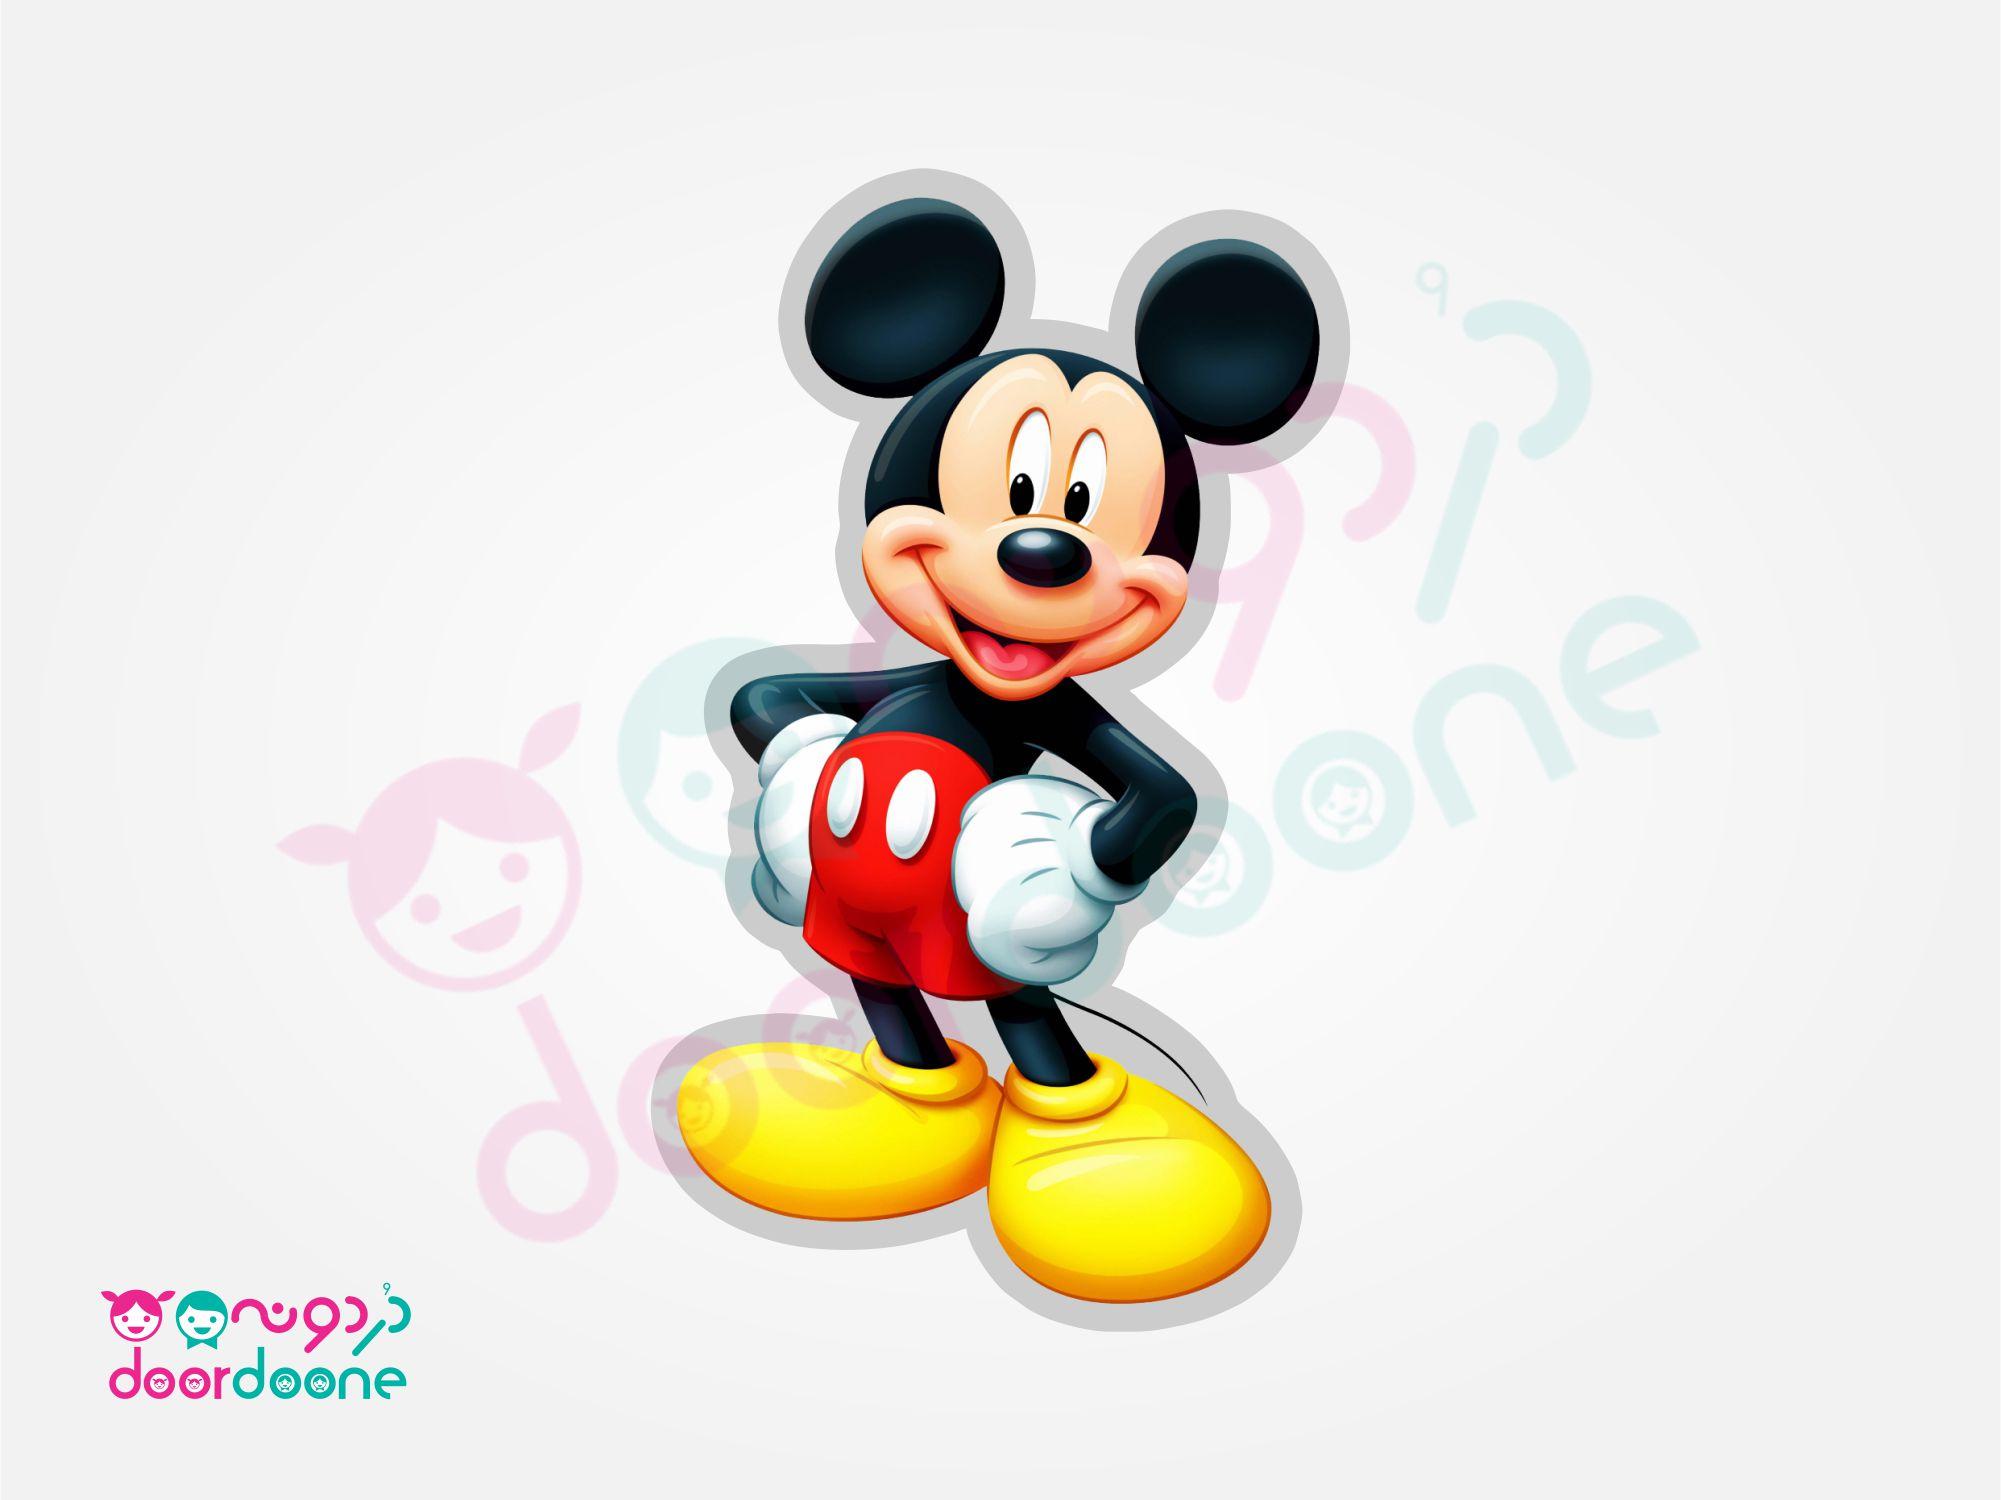 استند ميکی ماوس (Mikey Mouse) - ارتفاع 50 سانتيمتر